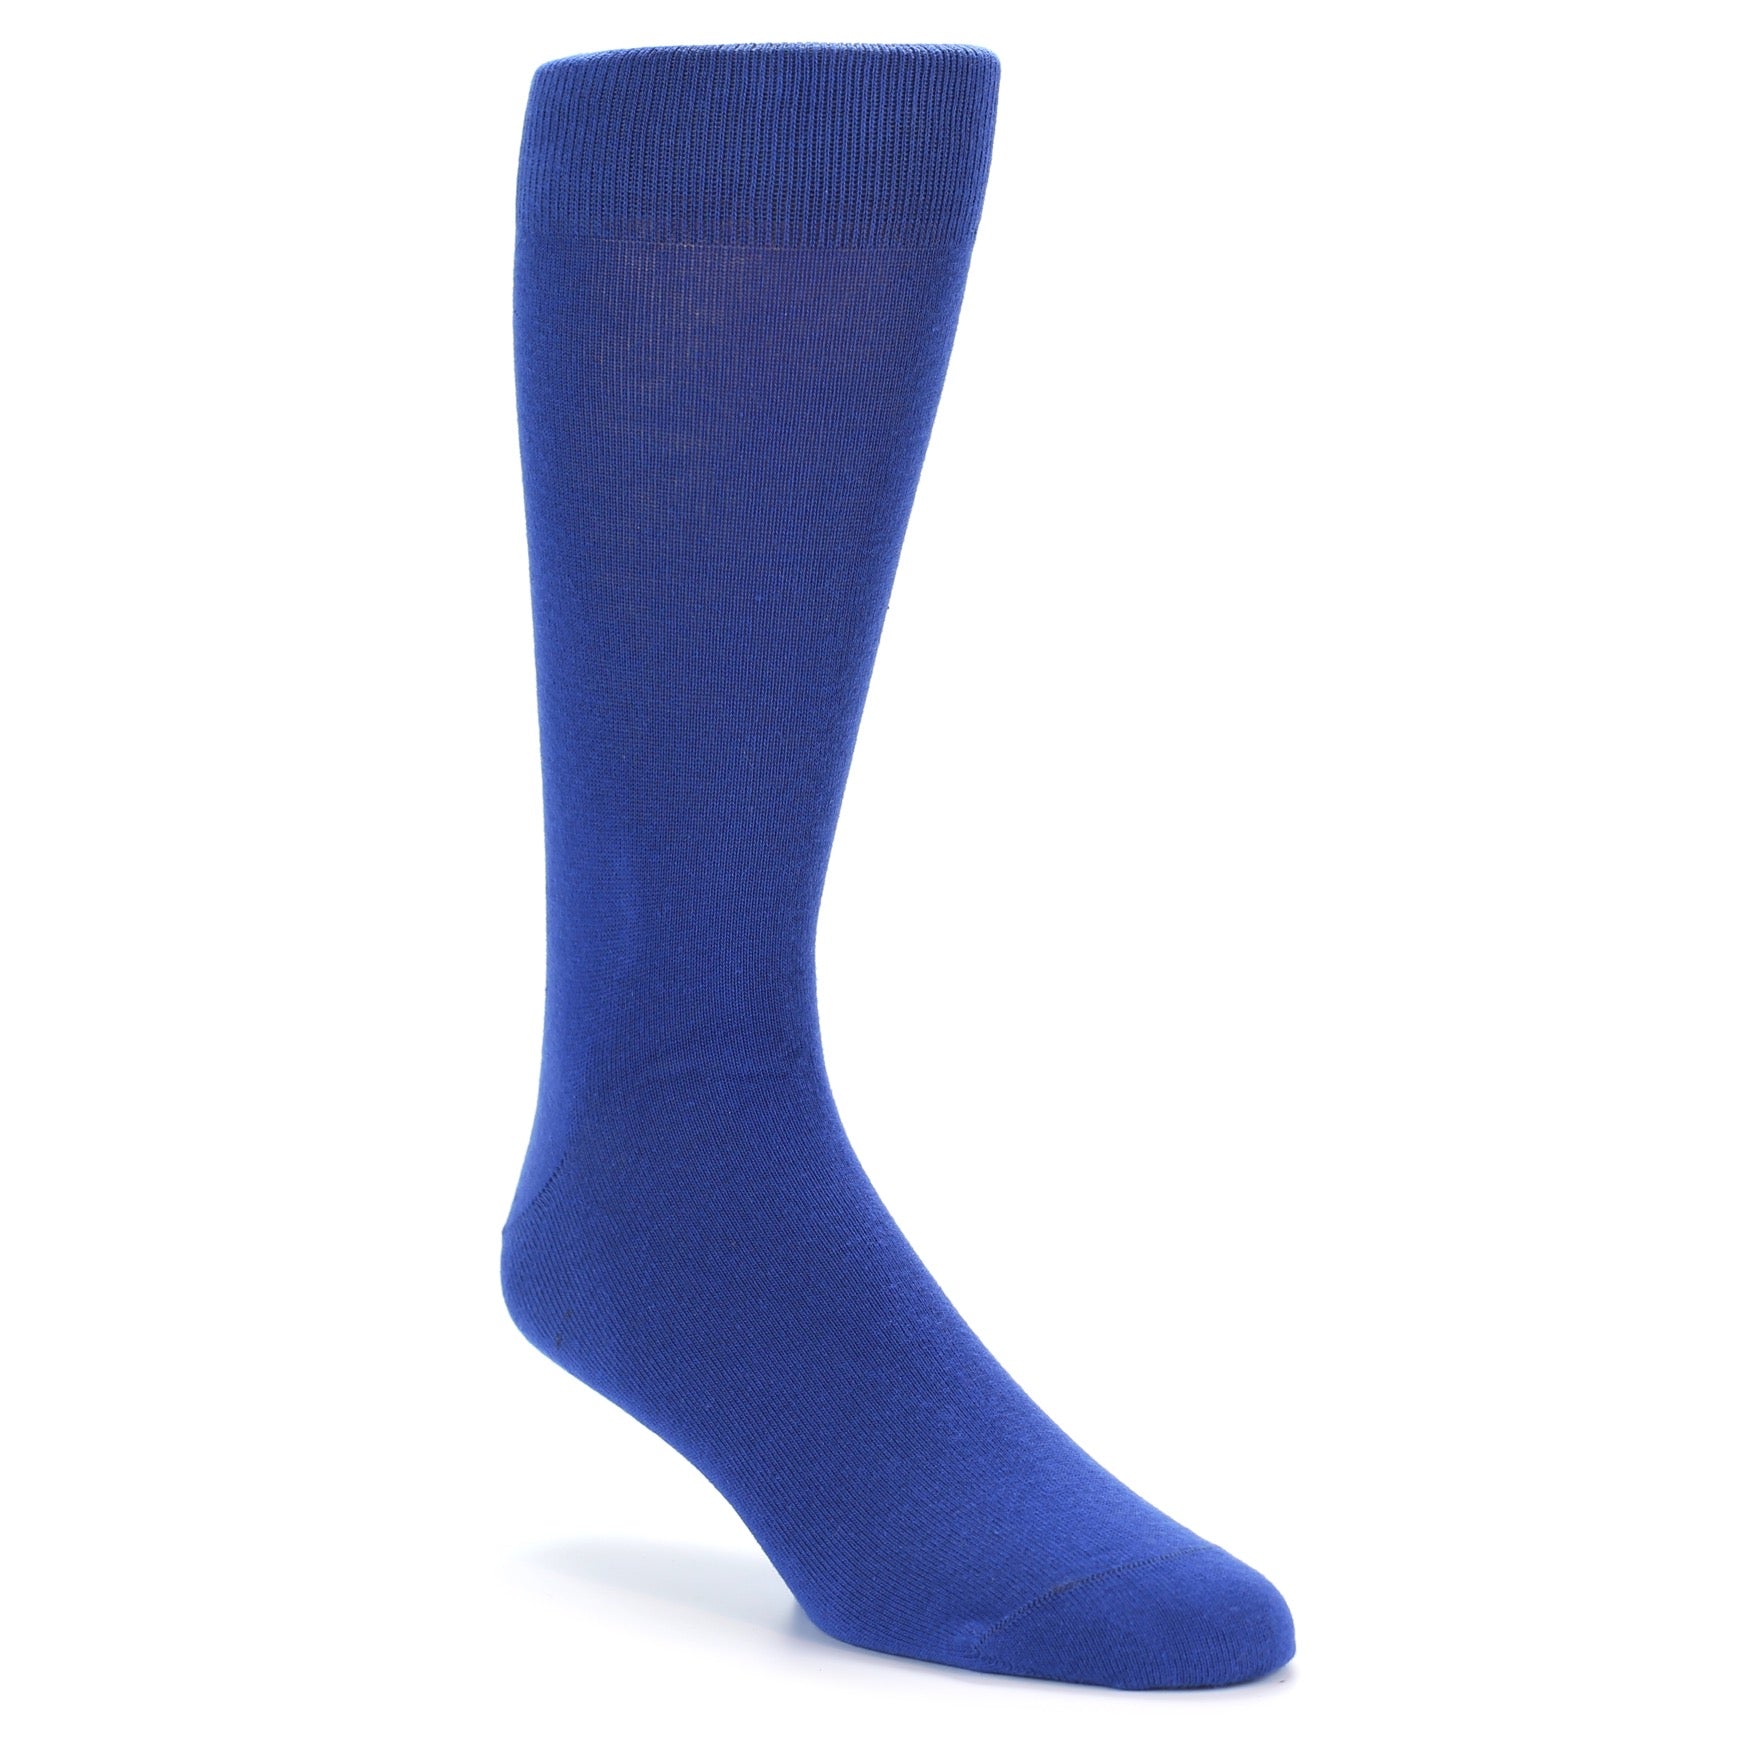 Midnight Blue Solid Color Socks - Men's Dress Socks